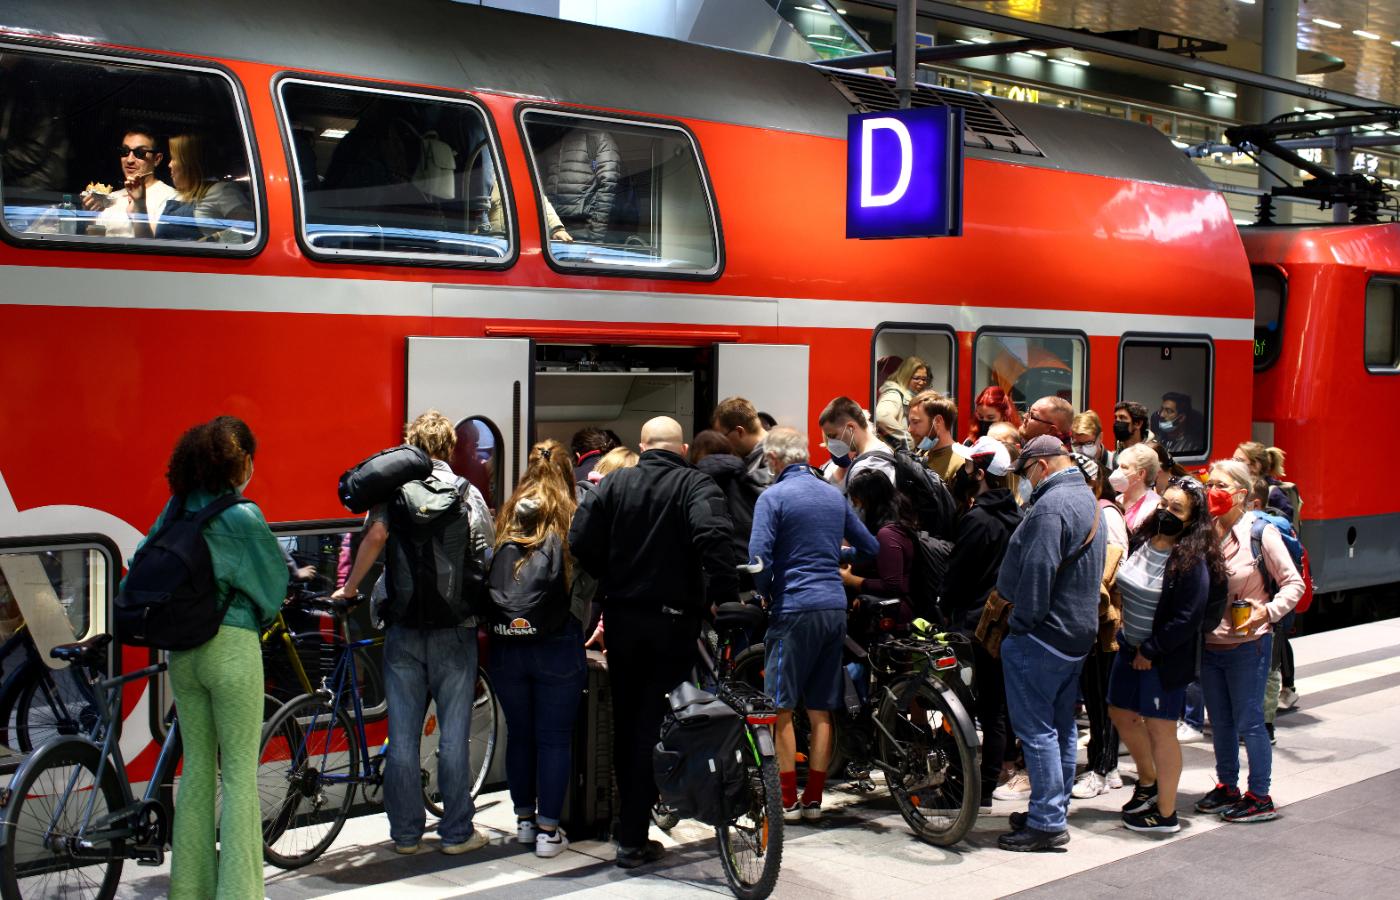 Deutsche Bahn przygotowało specjalną wakacyjną ofertę: miesięczne bilety za 9 euro na wszystkie środki transportu.